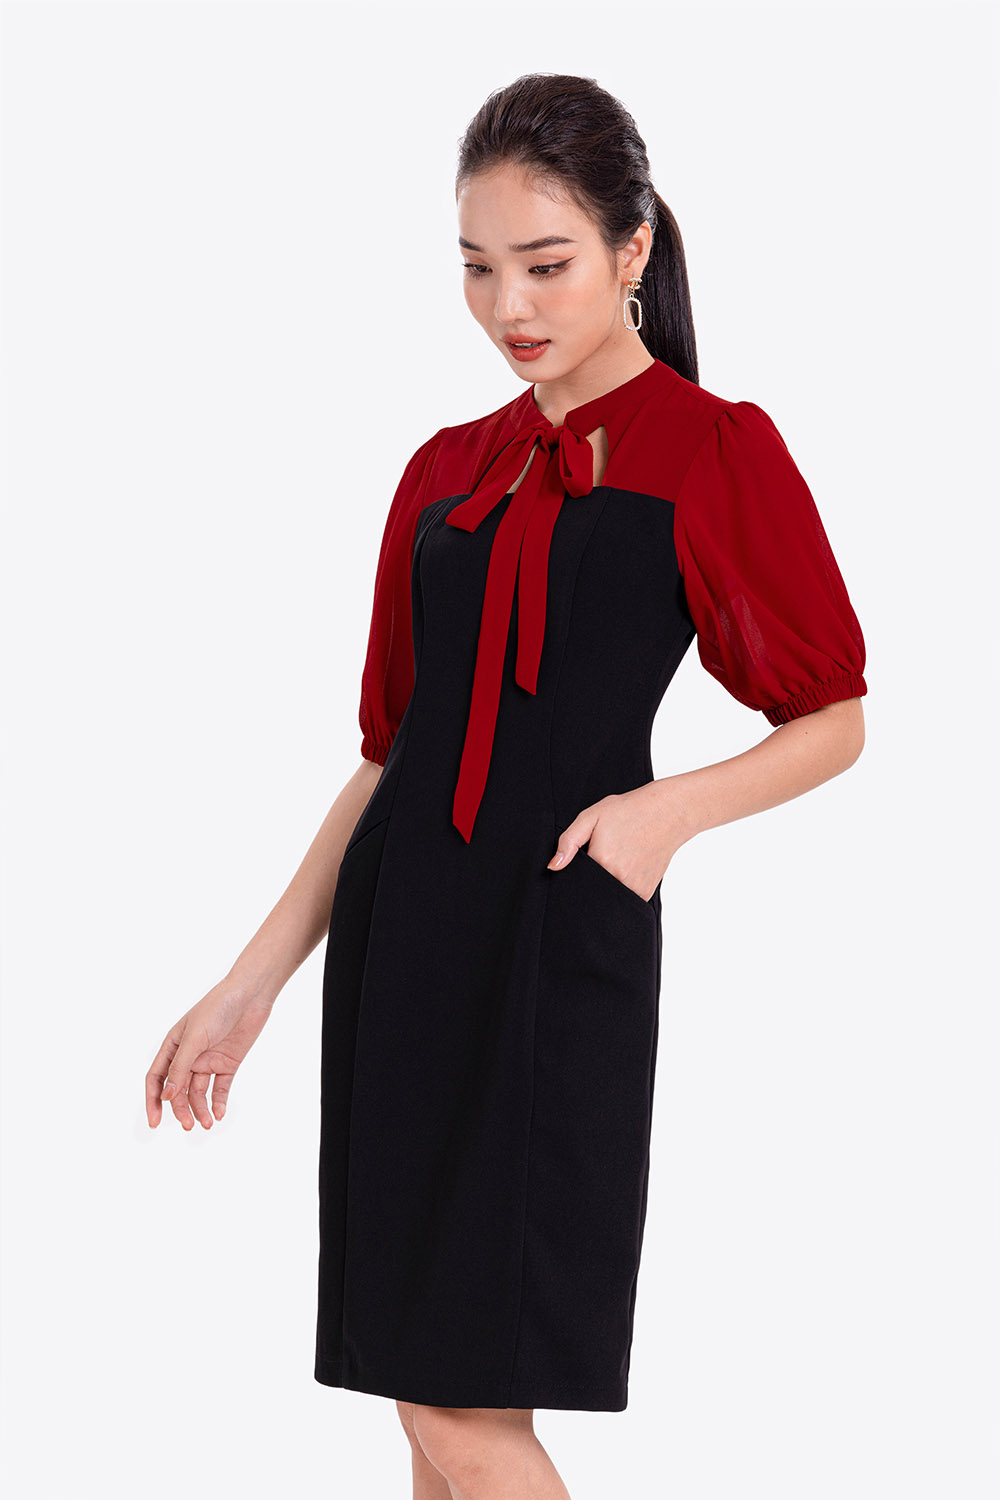 Đầm đen công sở dáng ôm phối màu HL21-23 | Thời trang công sở K&K ...